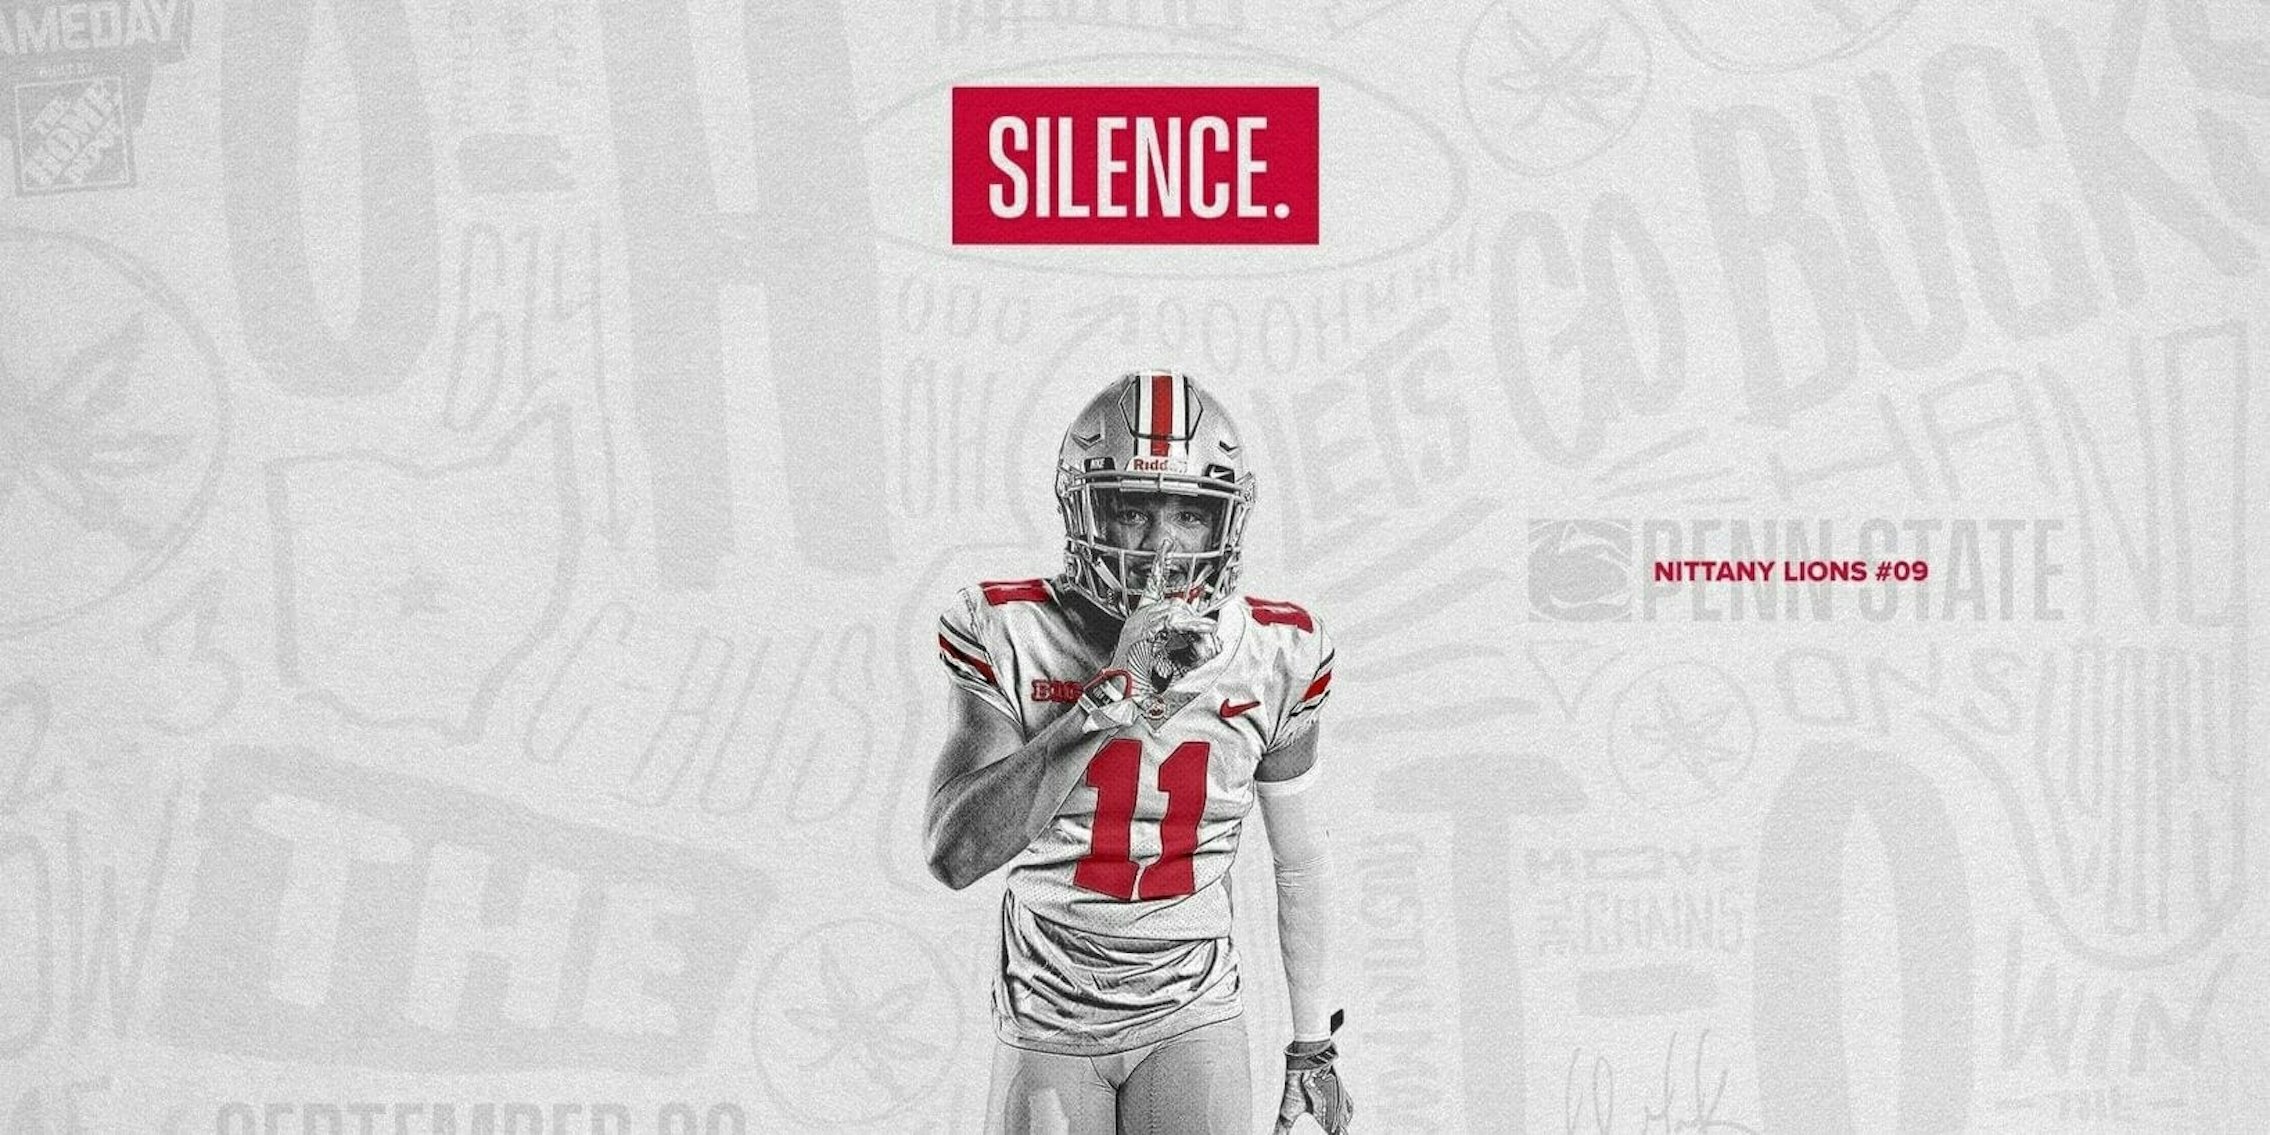 Ohio State football silence tweet